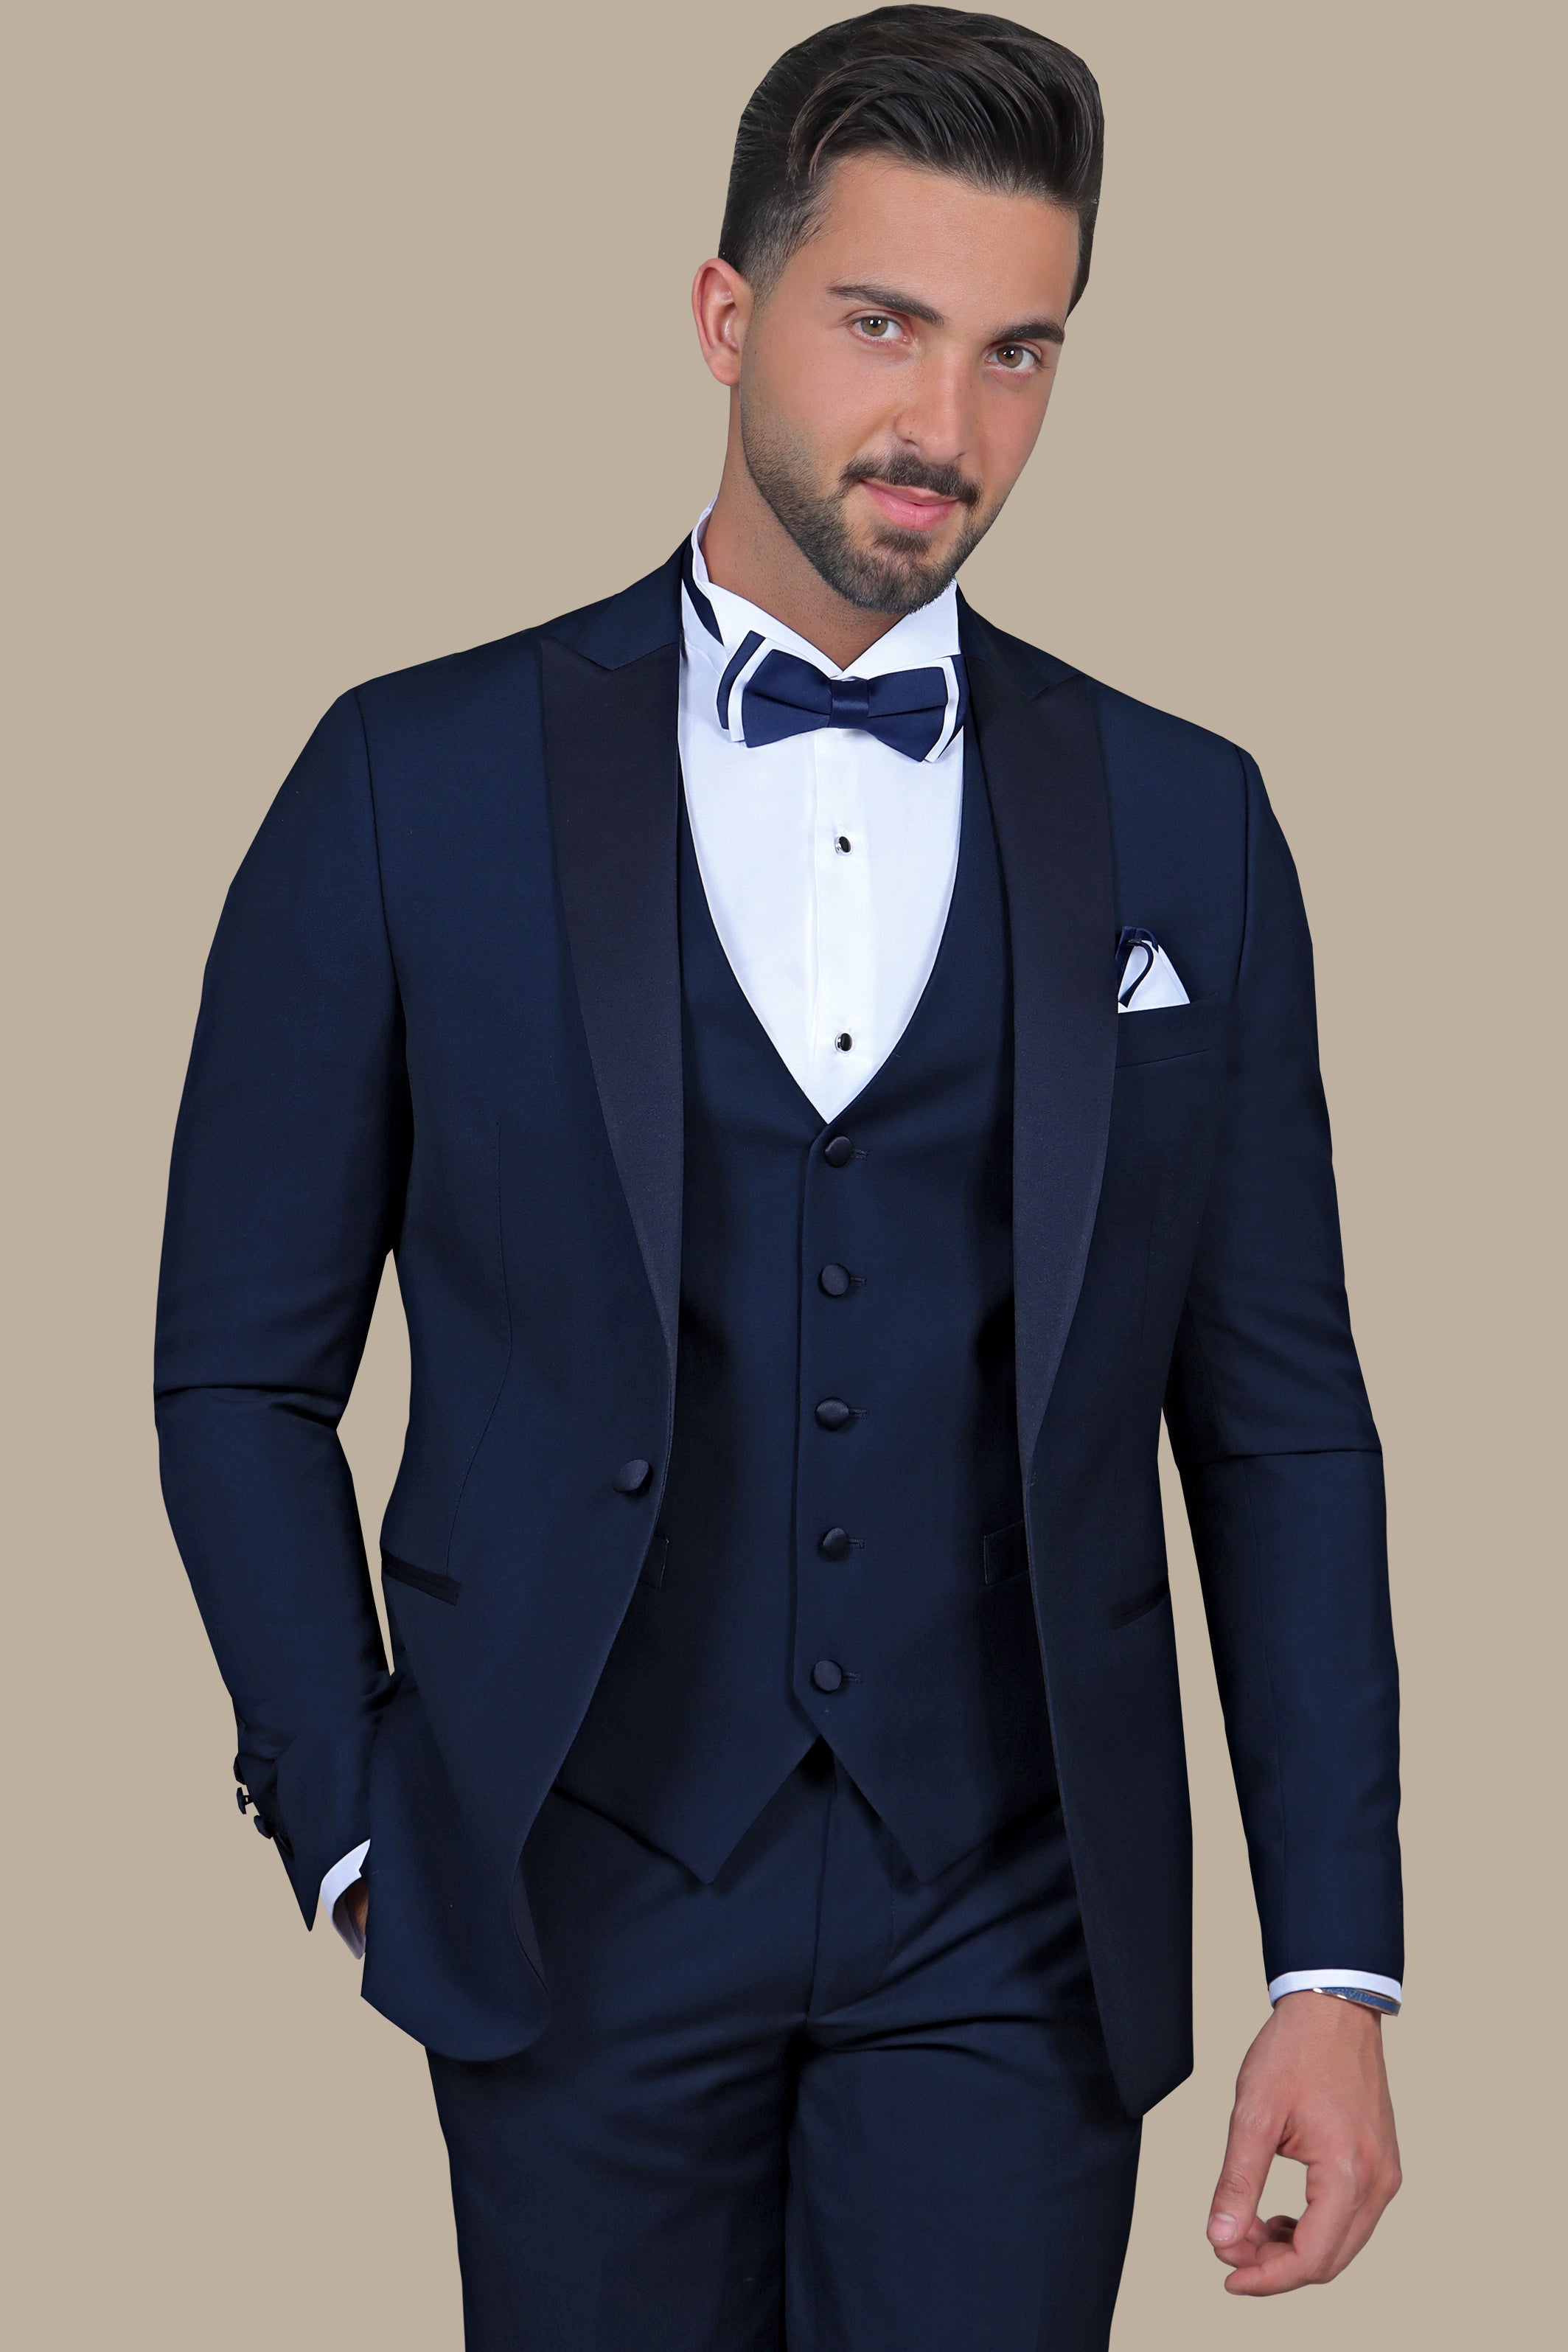 Effortless Elegance: Light Navy Peak Lapel 3-Piece Tuxedo for Timeless Style